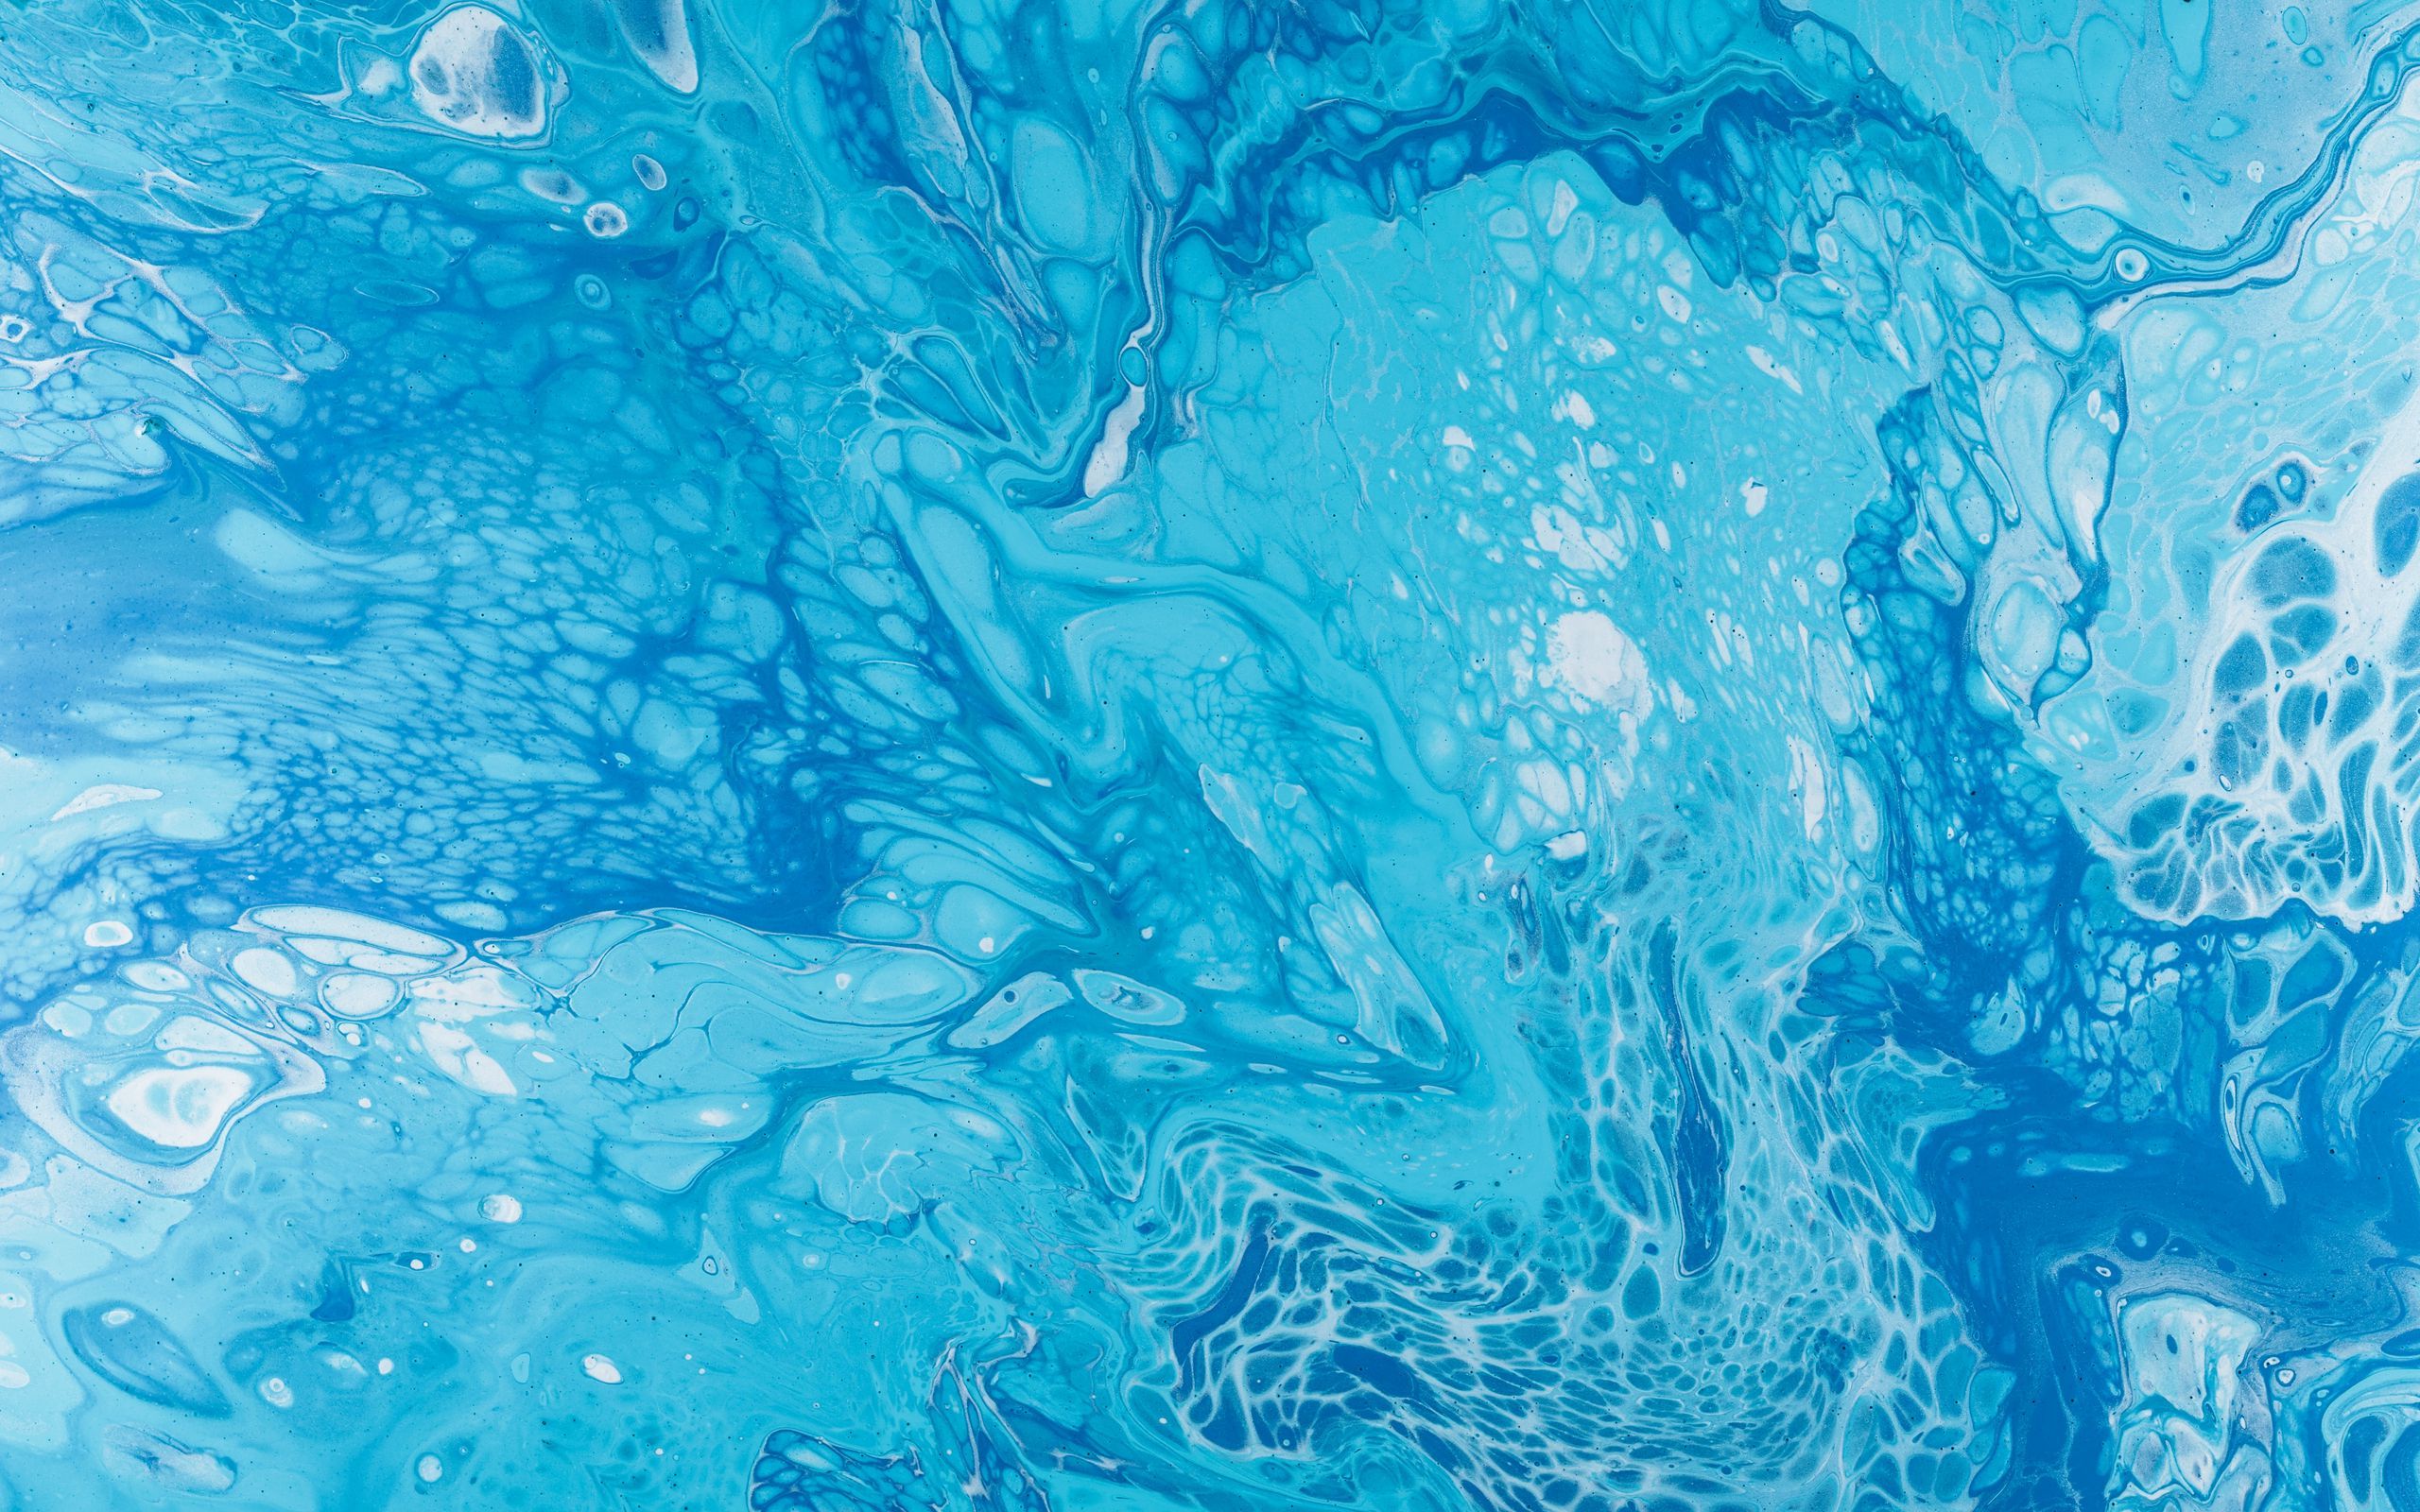 Download wallpaper 2560x1600 paint, liquid, fluid art, stains, blue widescreen 16:10 HD background